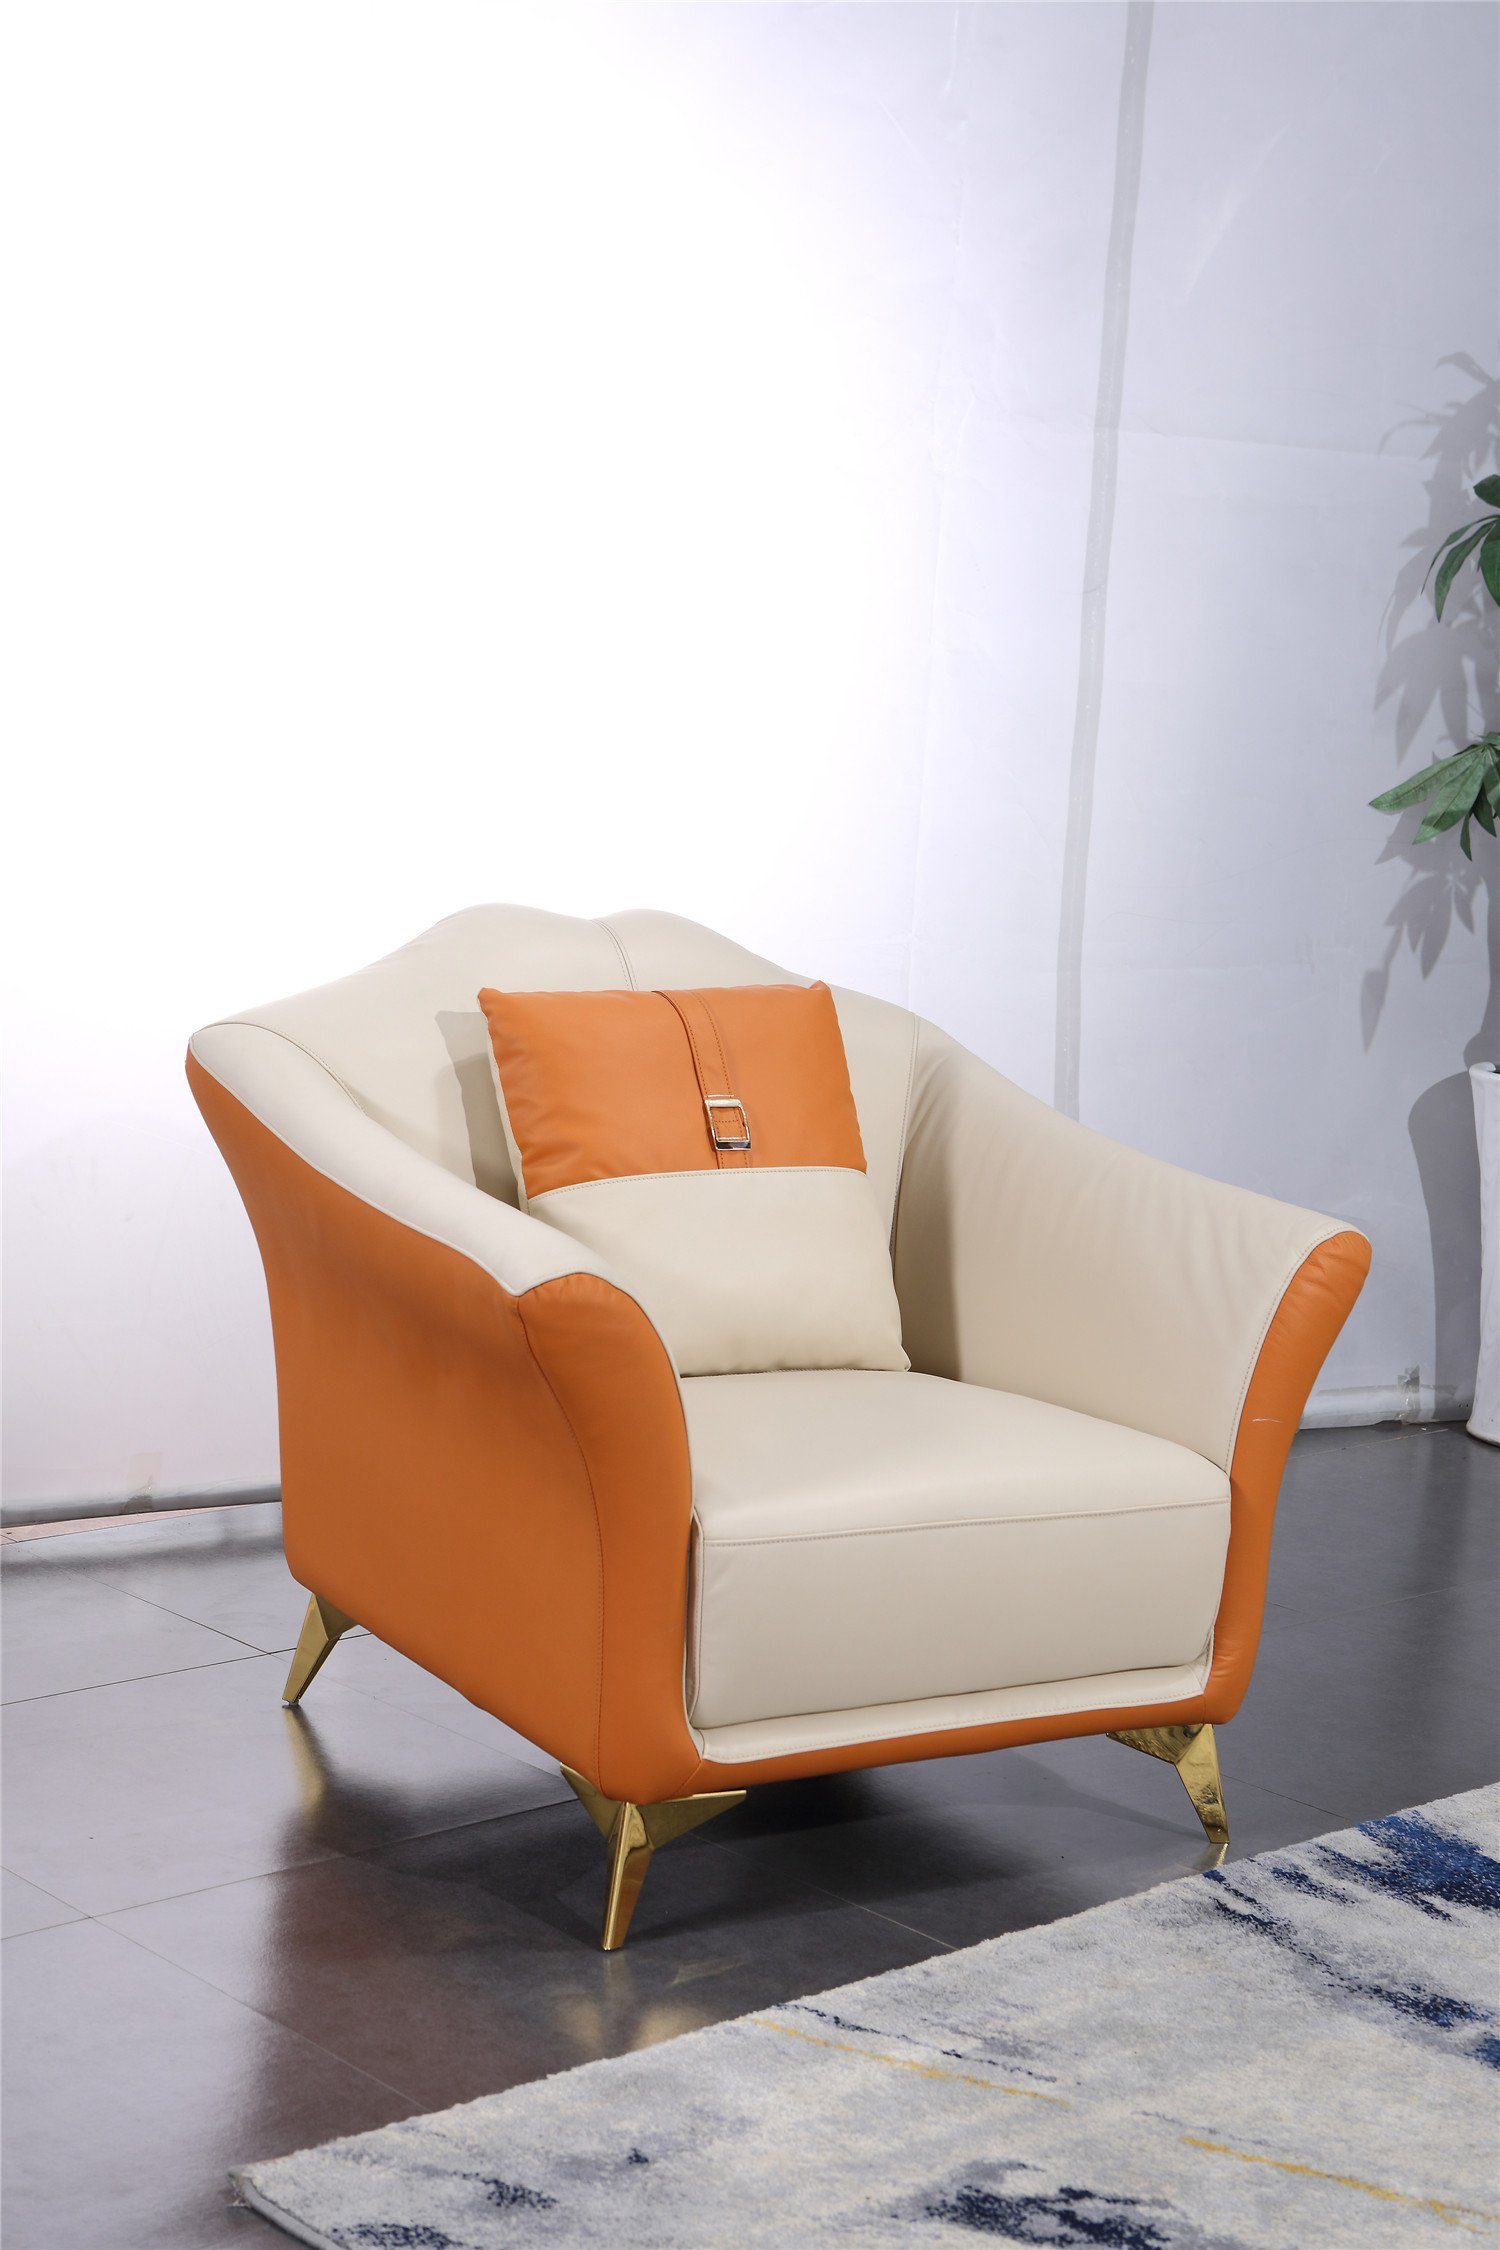 Moderne in JVmoebel Orange-weiße Europe Sofa Sofas, 3+1+1 Made Sitzer Sofagarnitur Garnituren